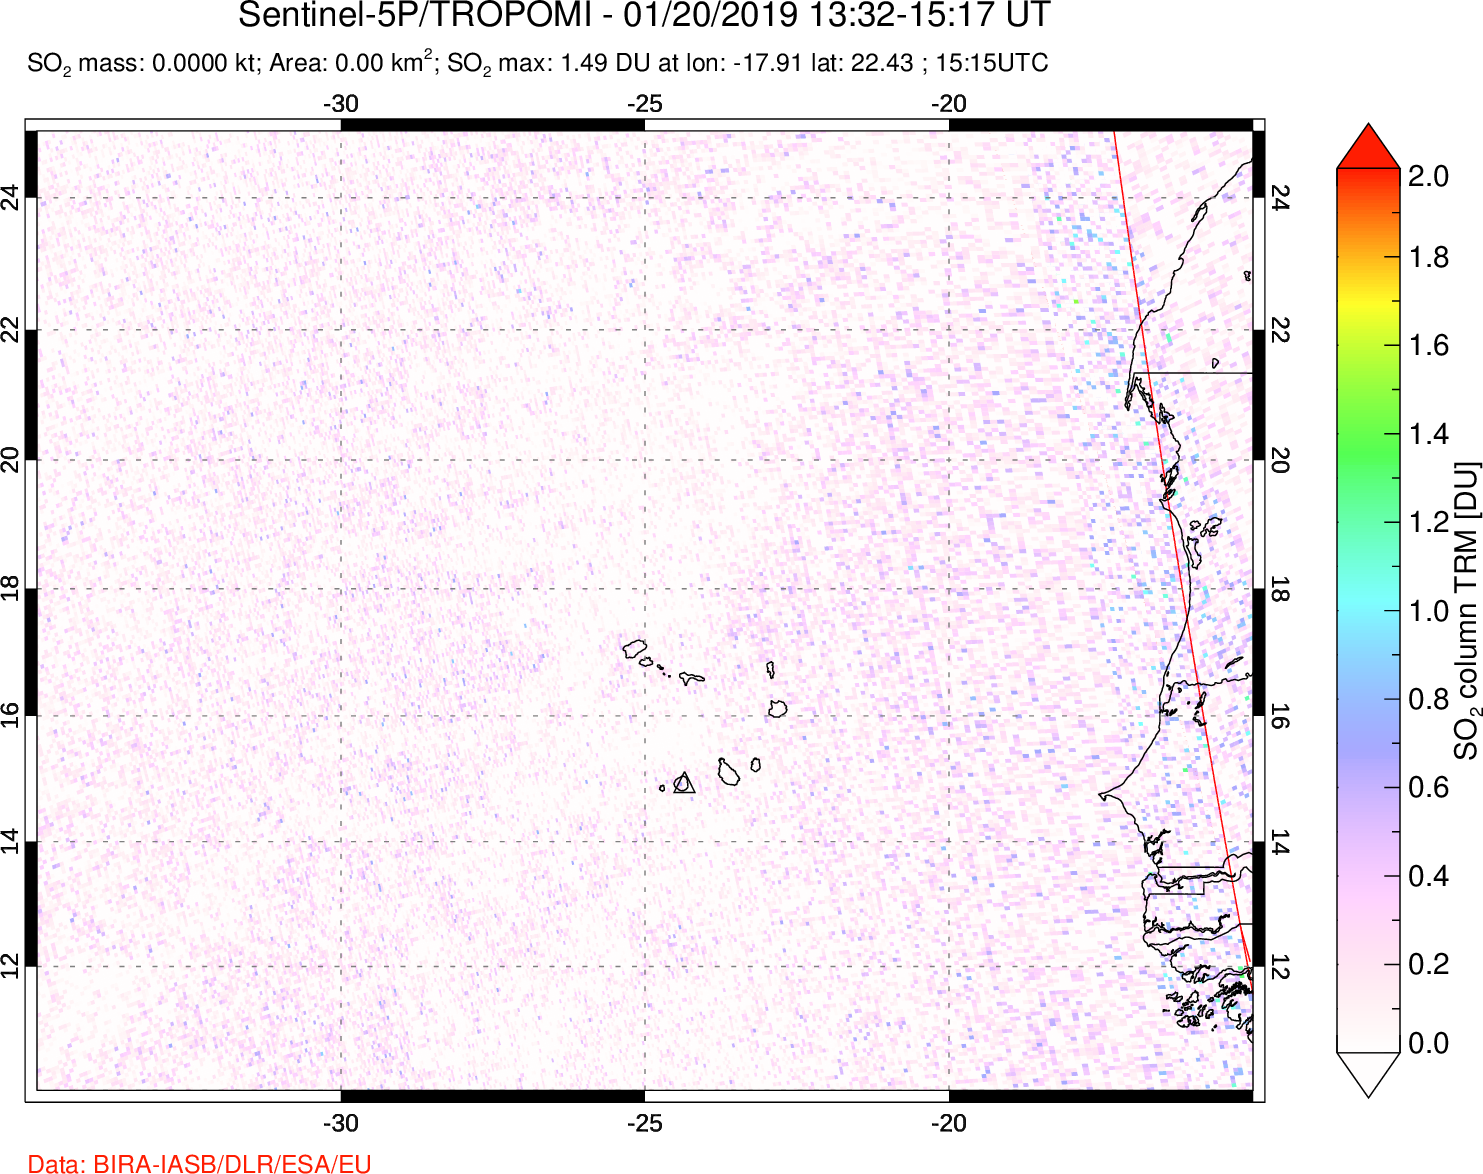 A sulfur dioxide image over Cape Verde Islands on Jan 20, 2019.